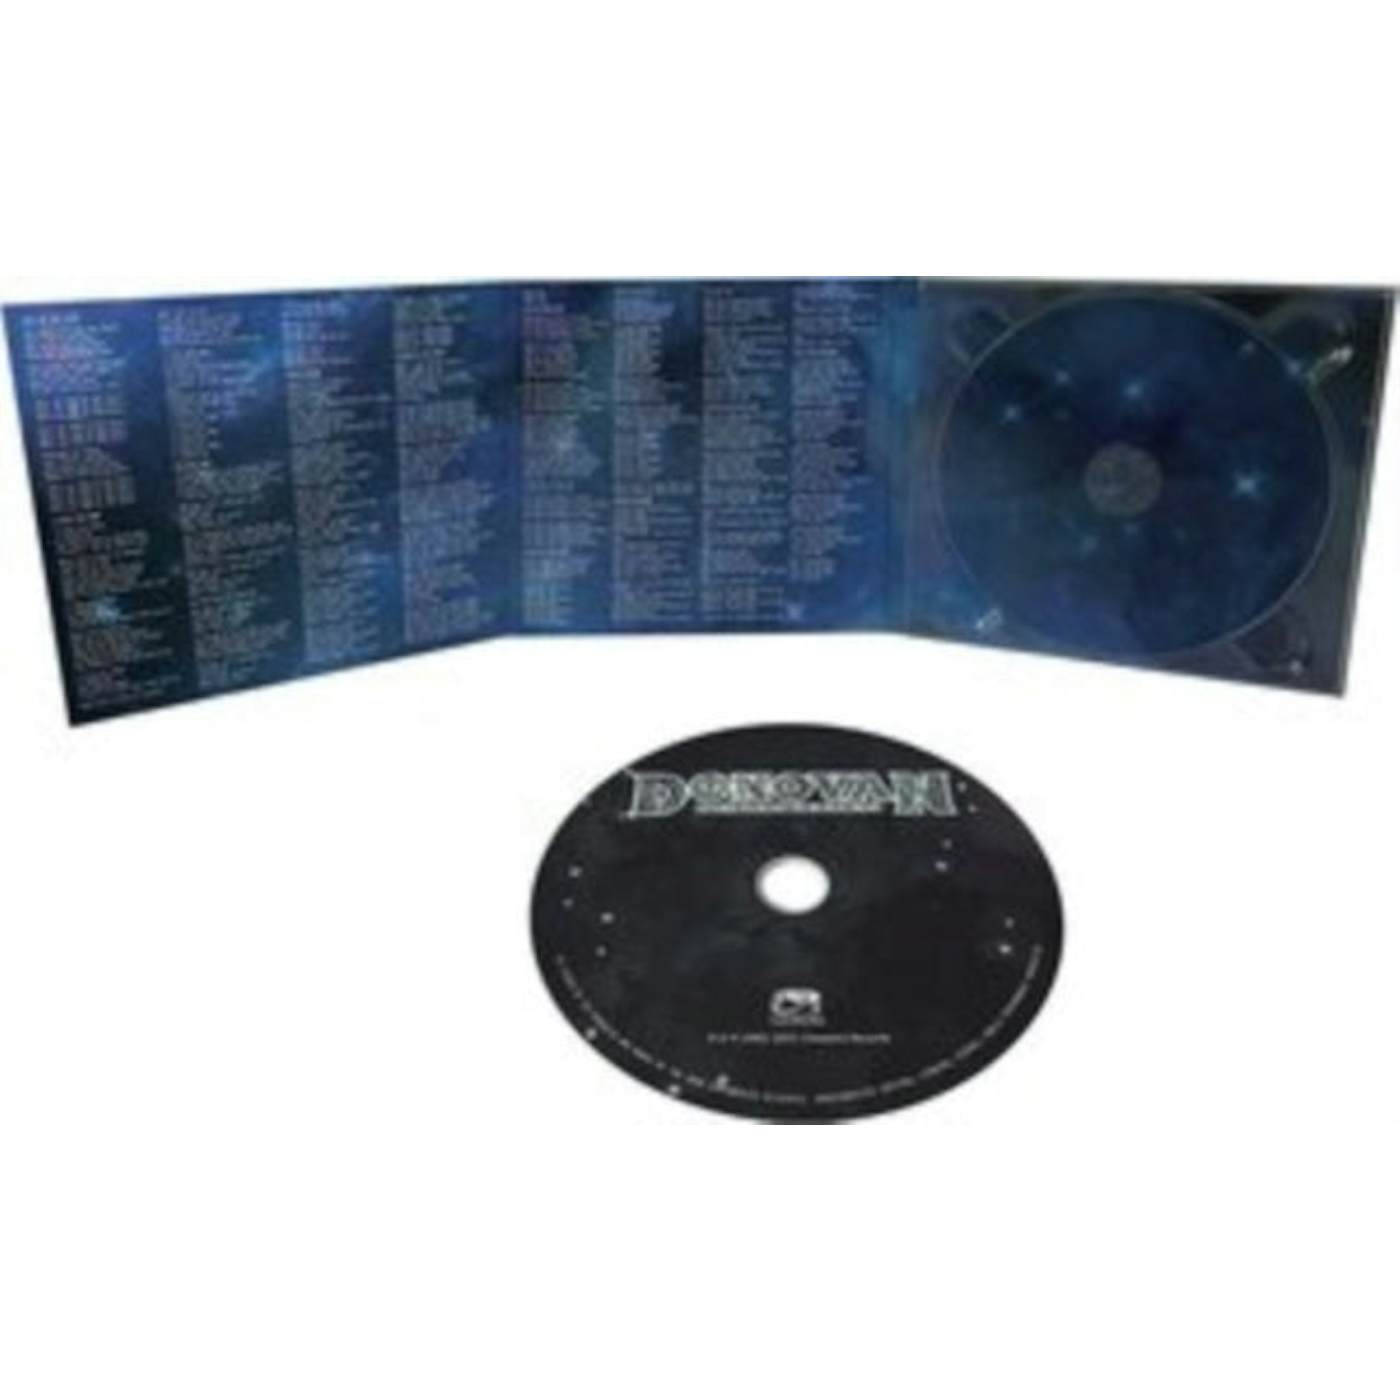 Donovan CD - Golden Tracks